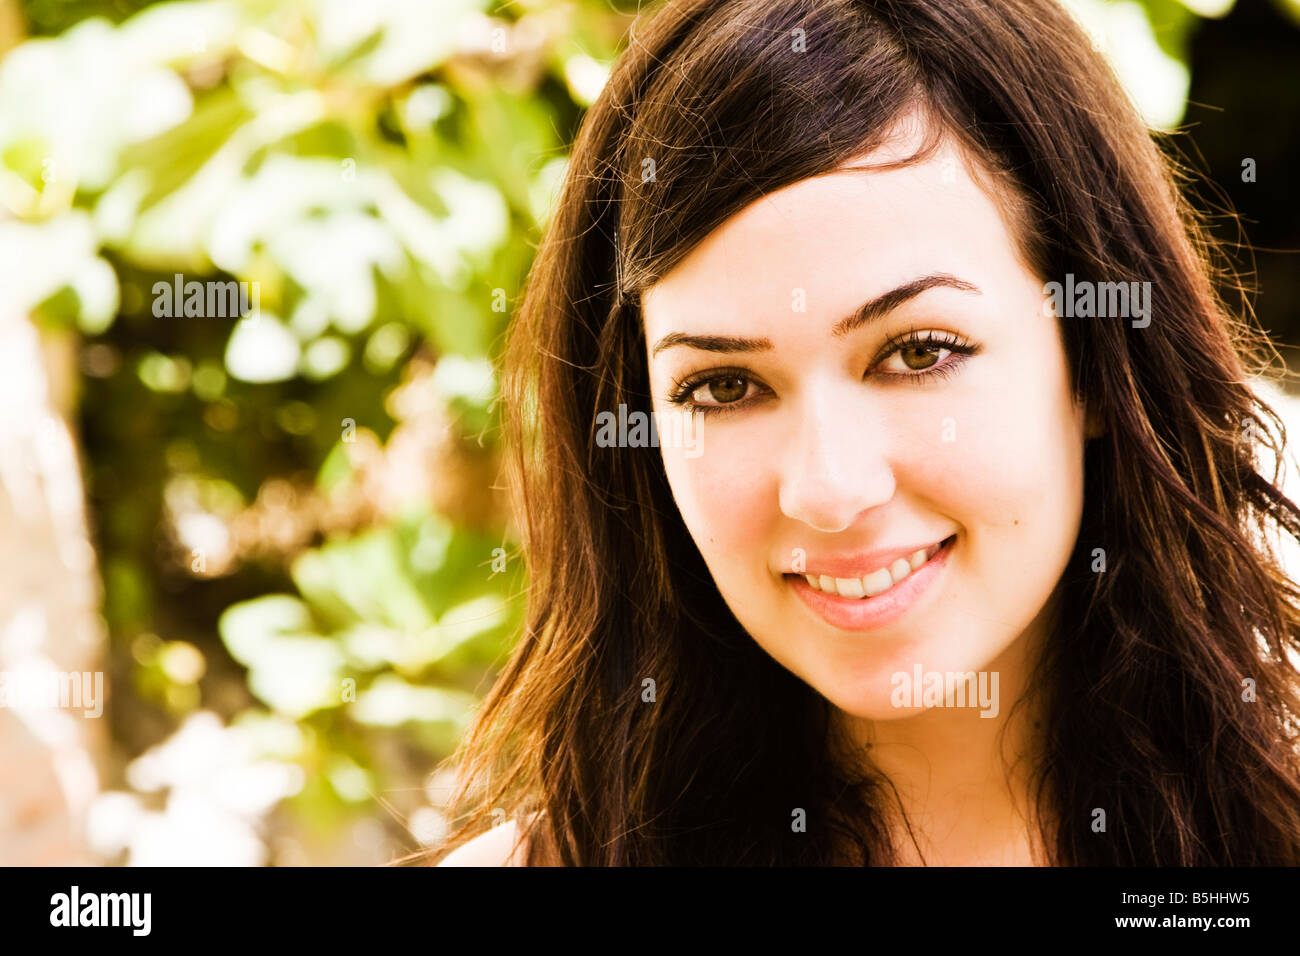 Smiling young woman staring at camera Stock Photo